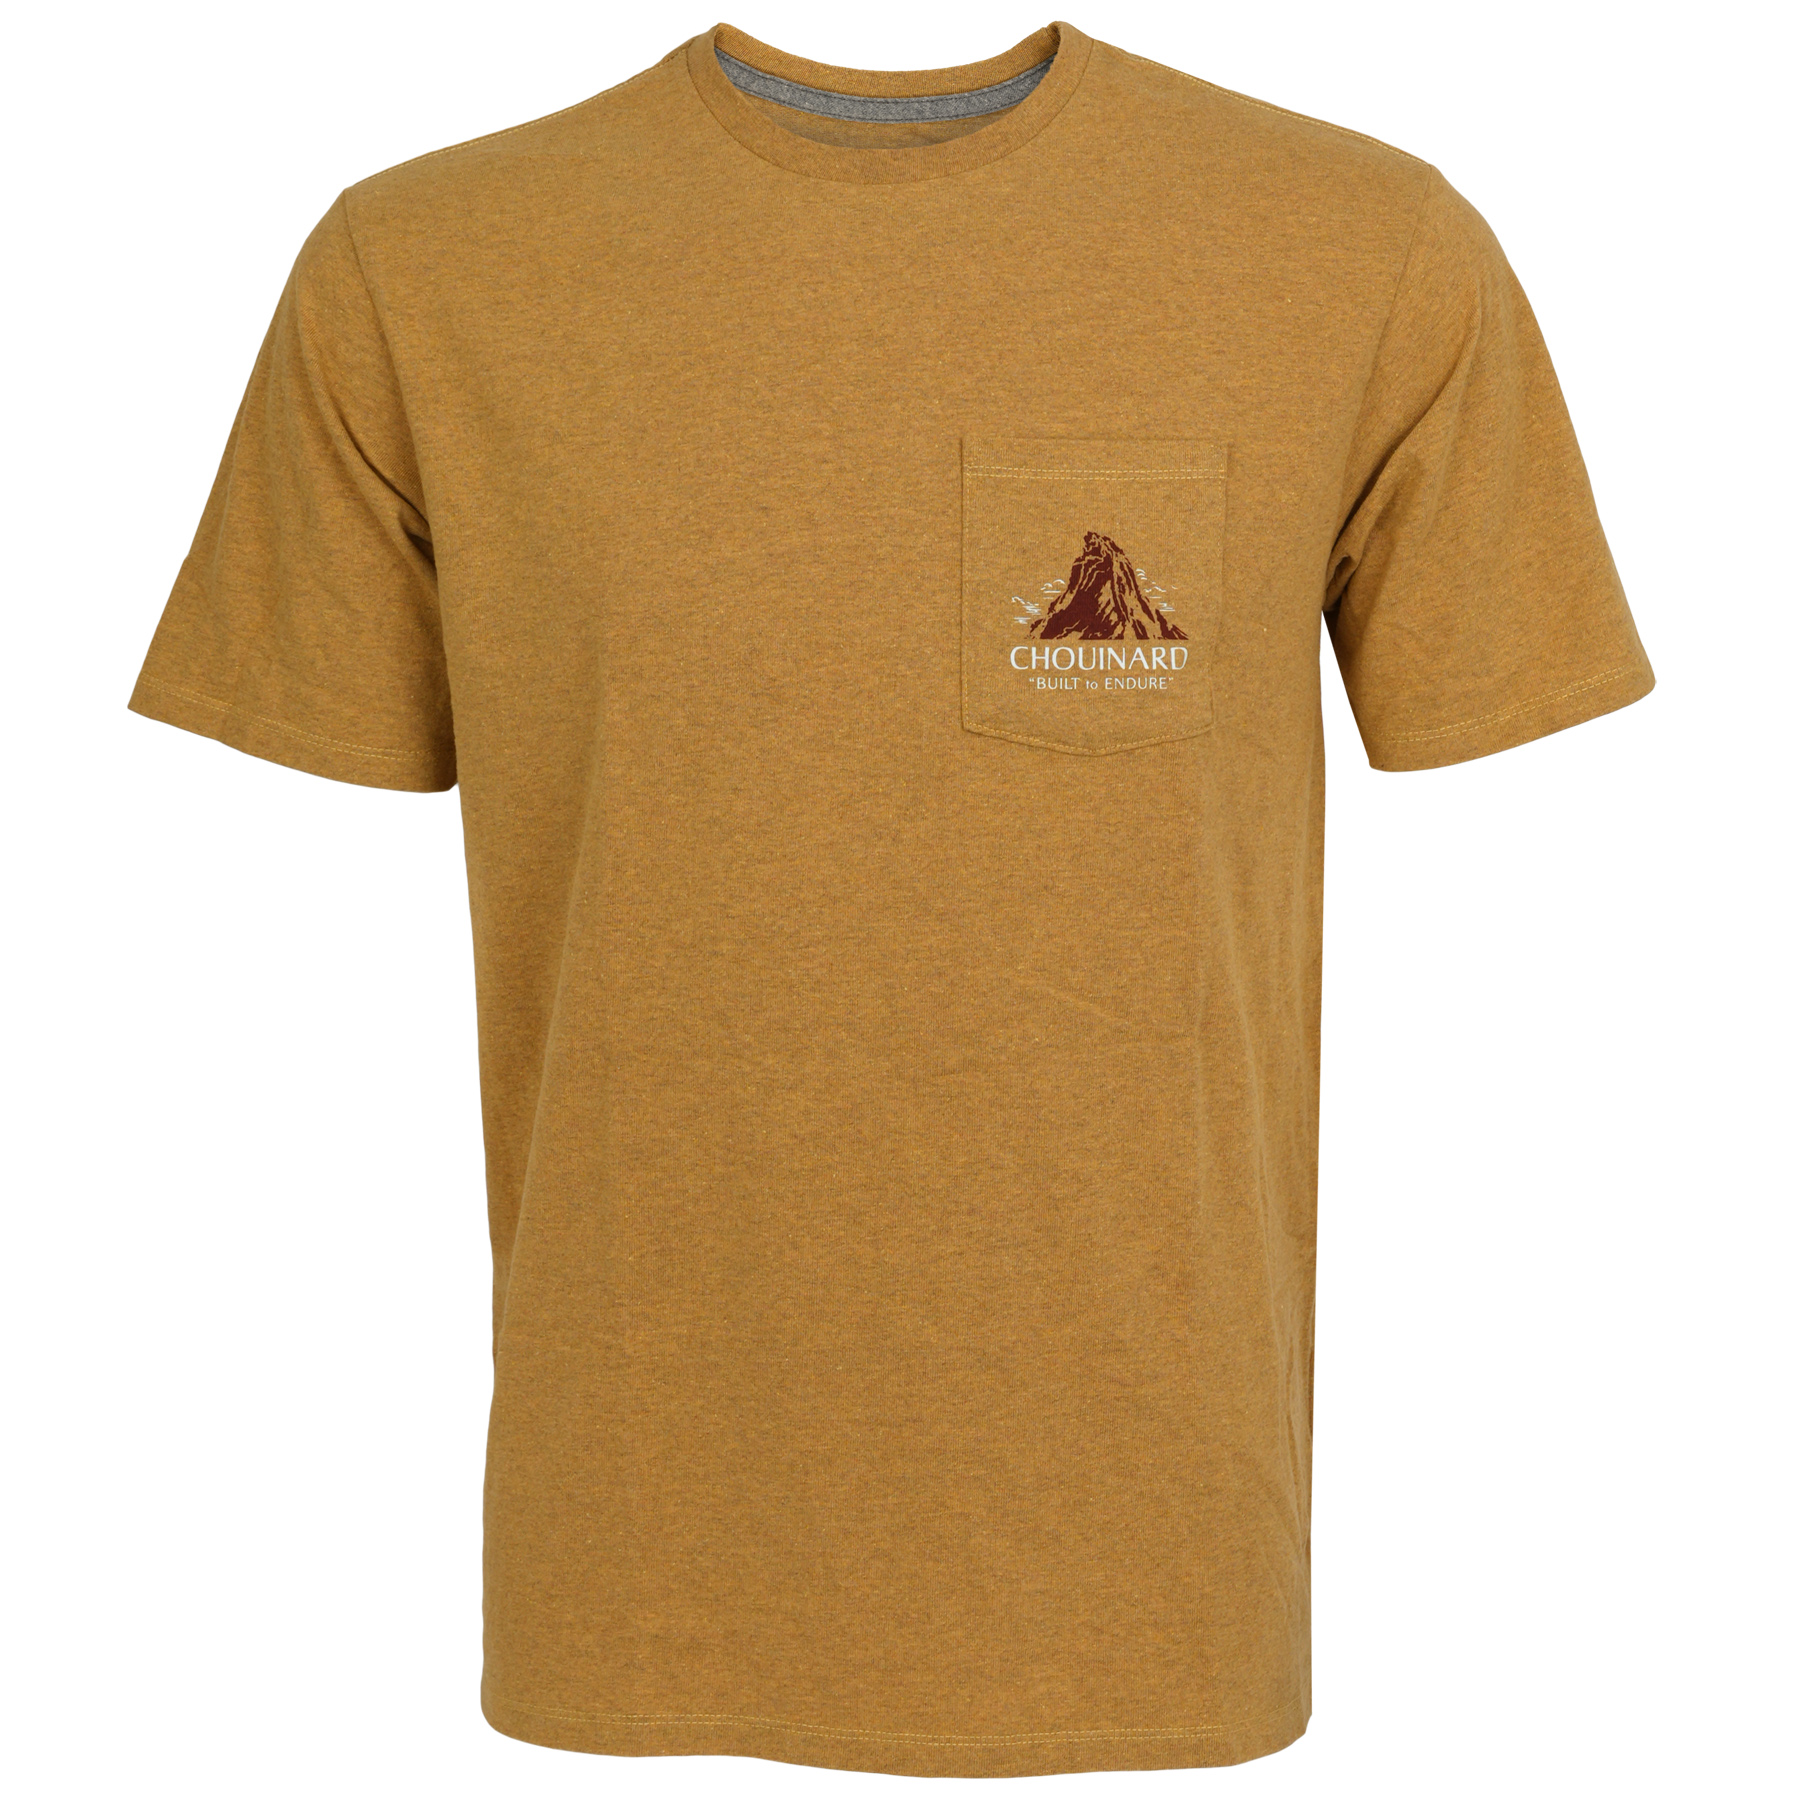 Produktbild von Patagonia Chouinard Crest Pocket Responsibili-Tee T-Shirt Herren - Pufferfish Gold